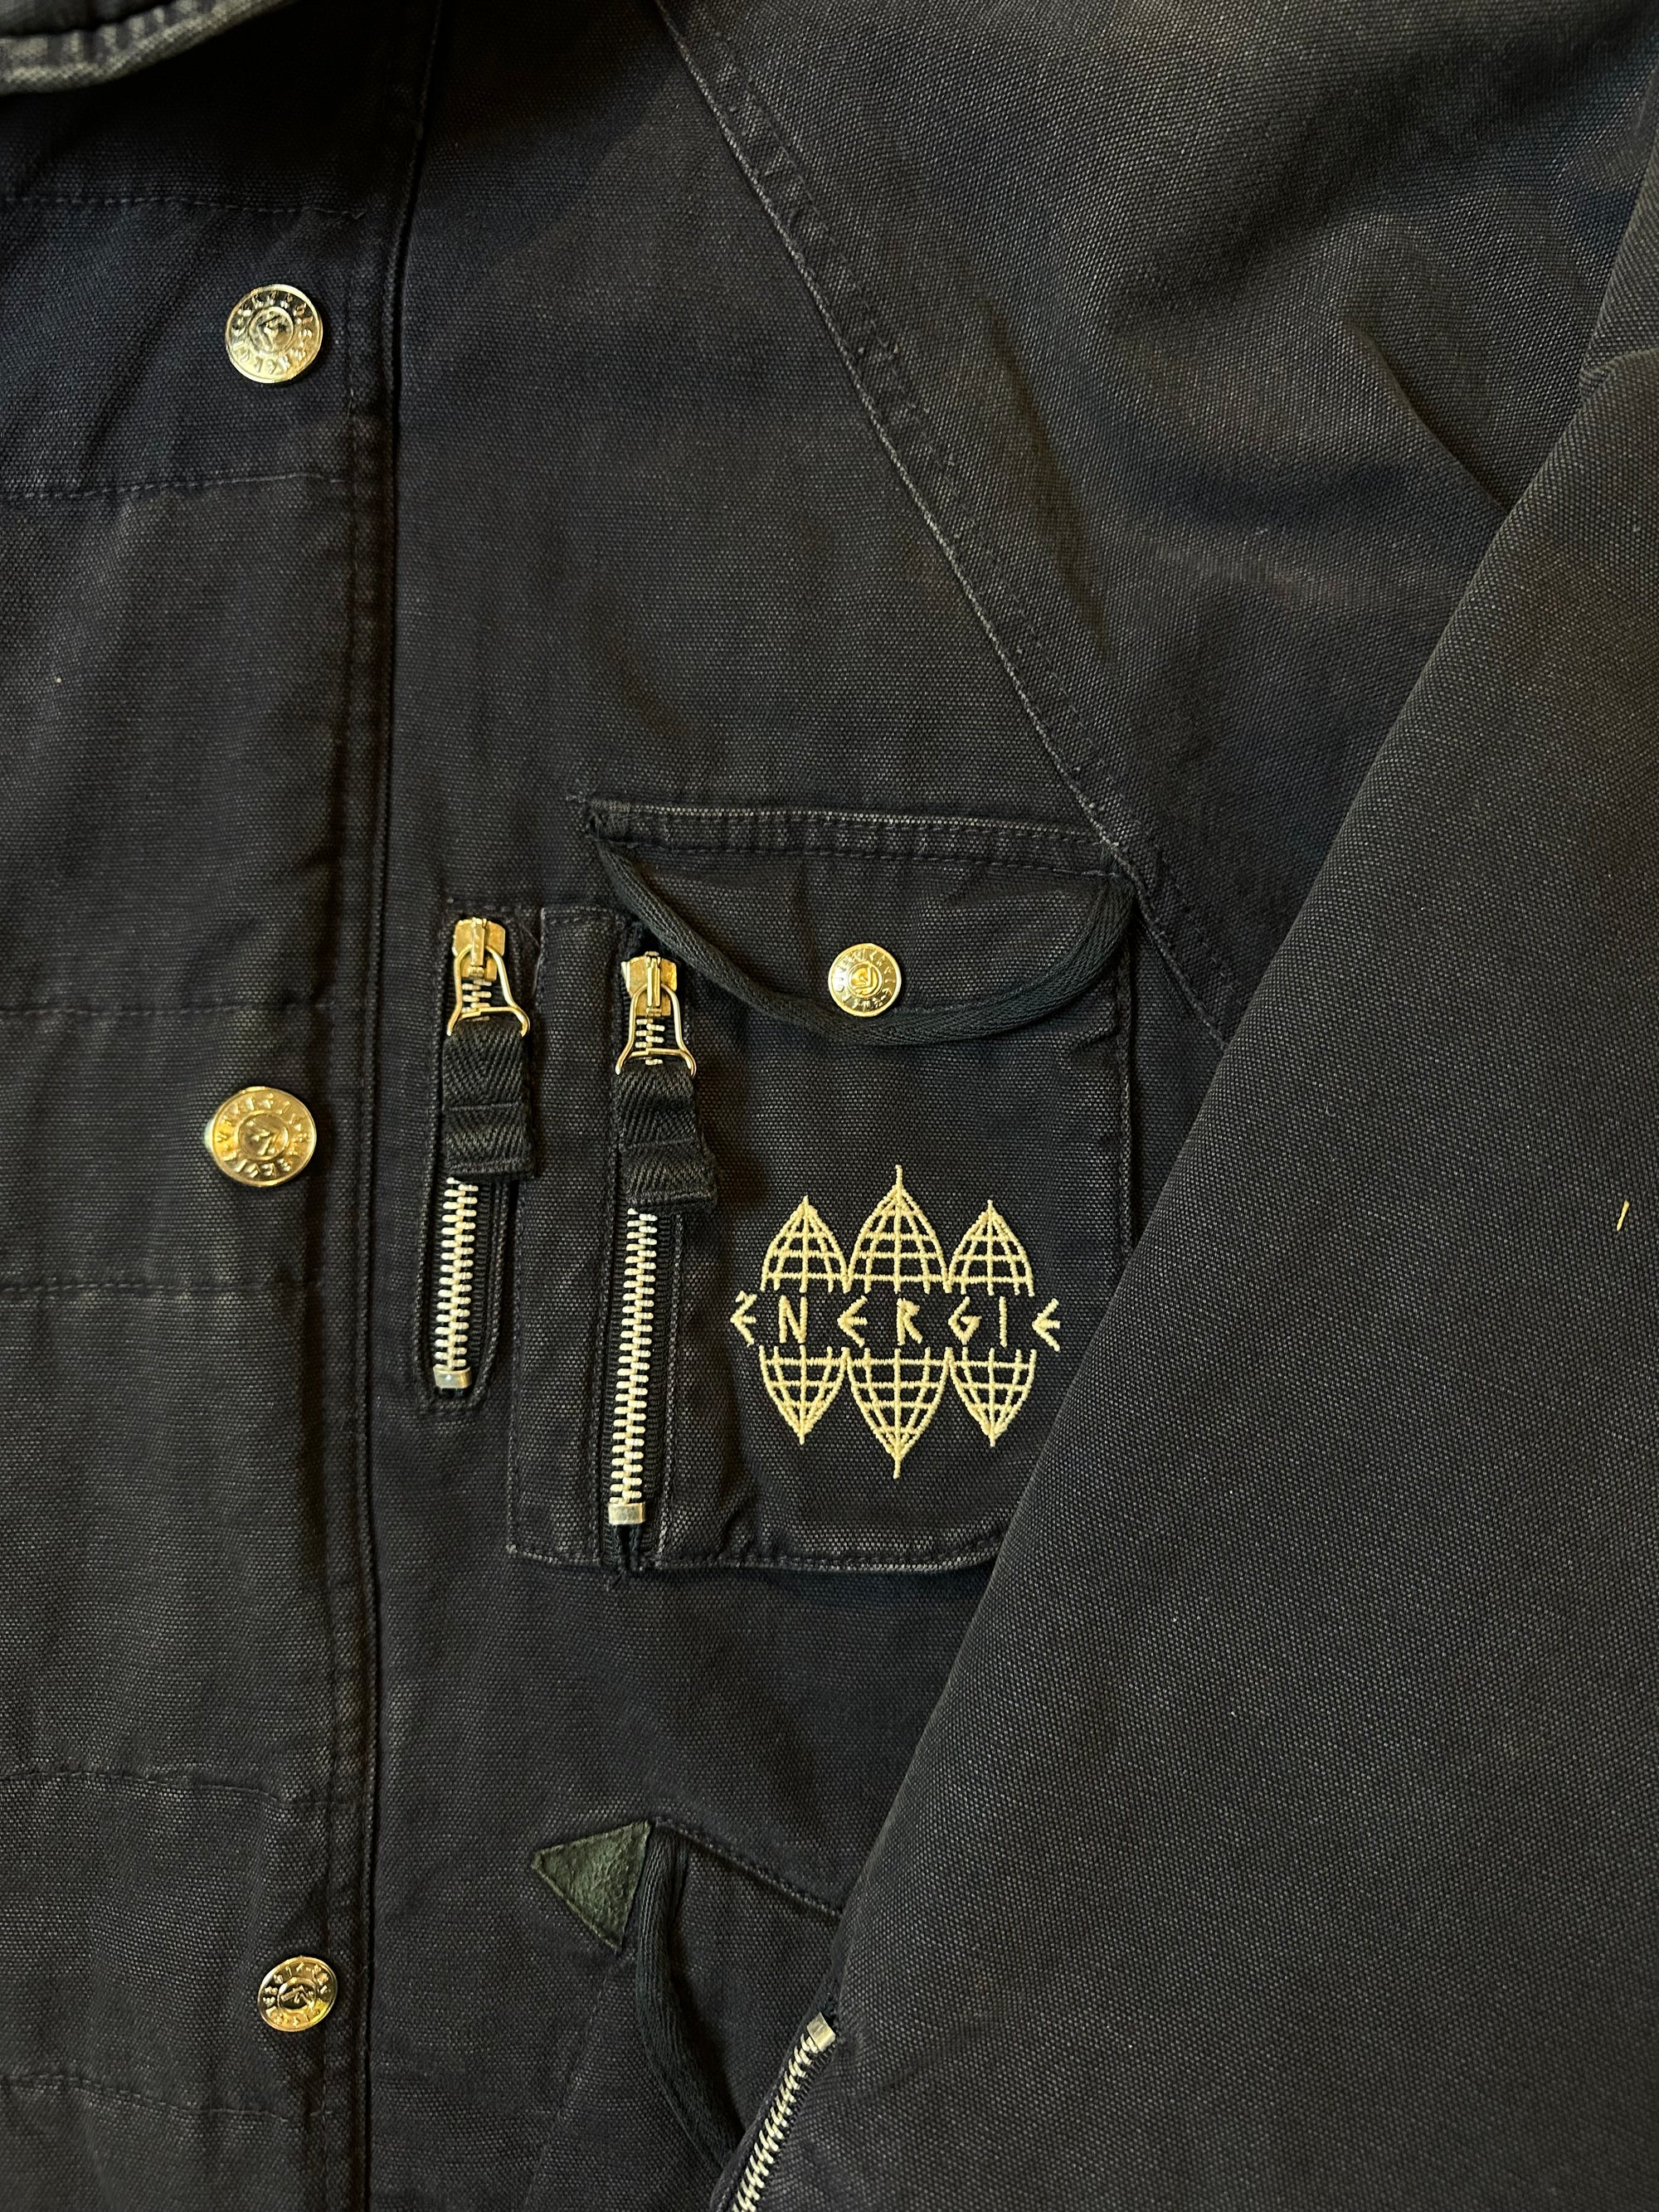 Detailliertes Produktbild von Navy farbene Energie Jacke von vorne in Größe M/L mit silbernen Knöpfen 